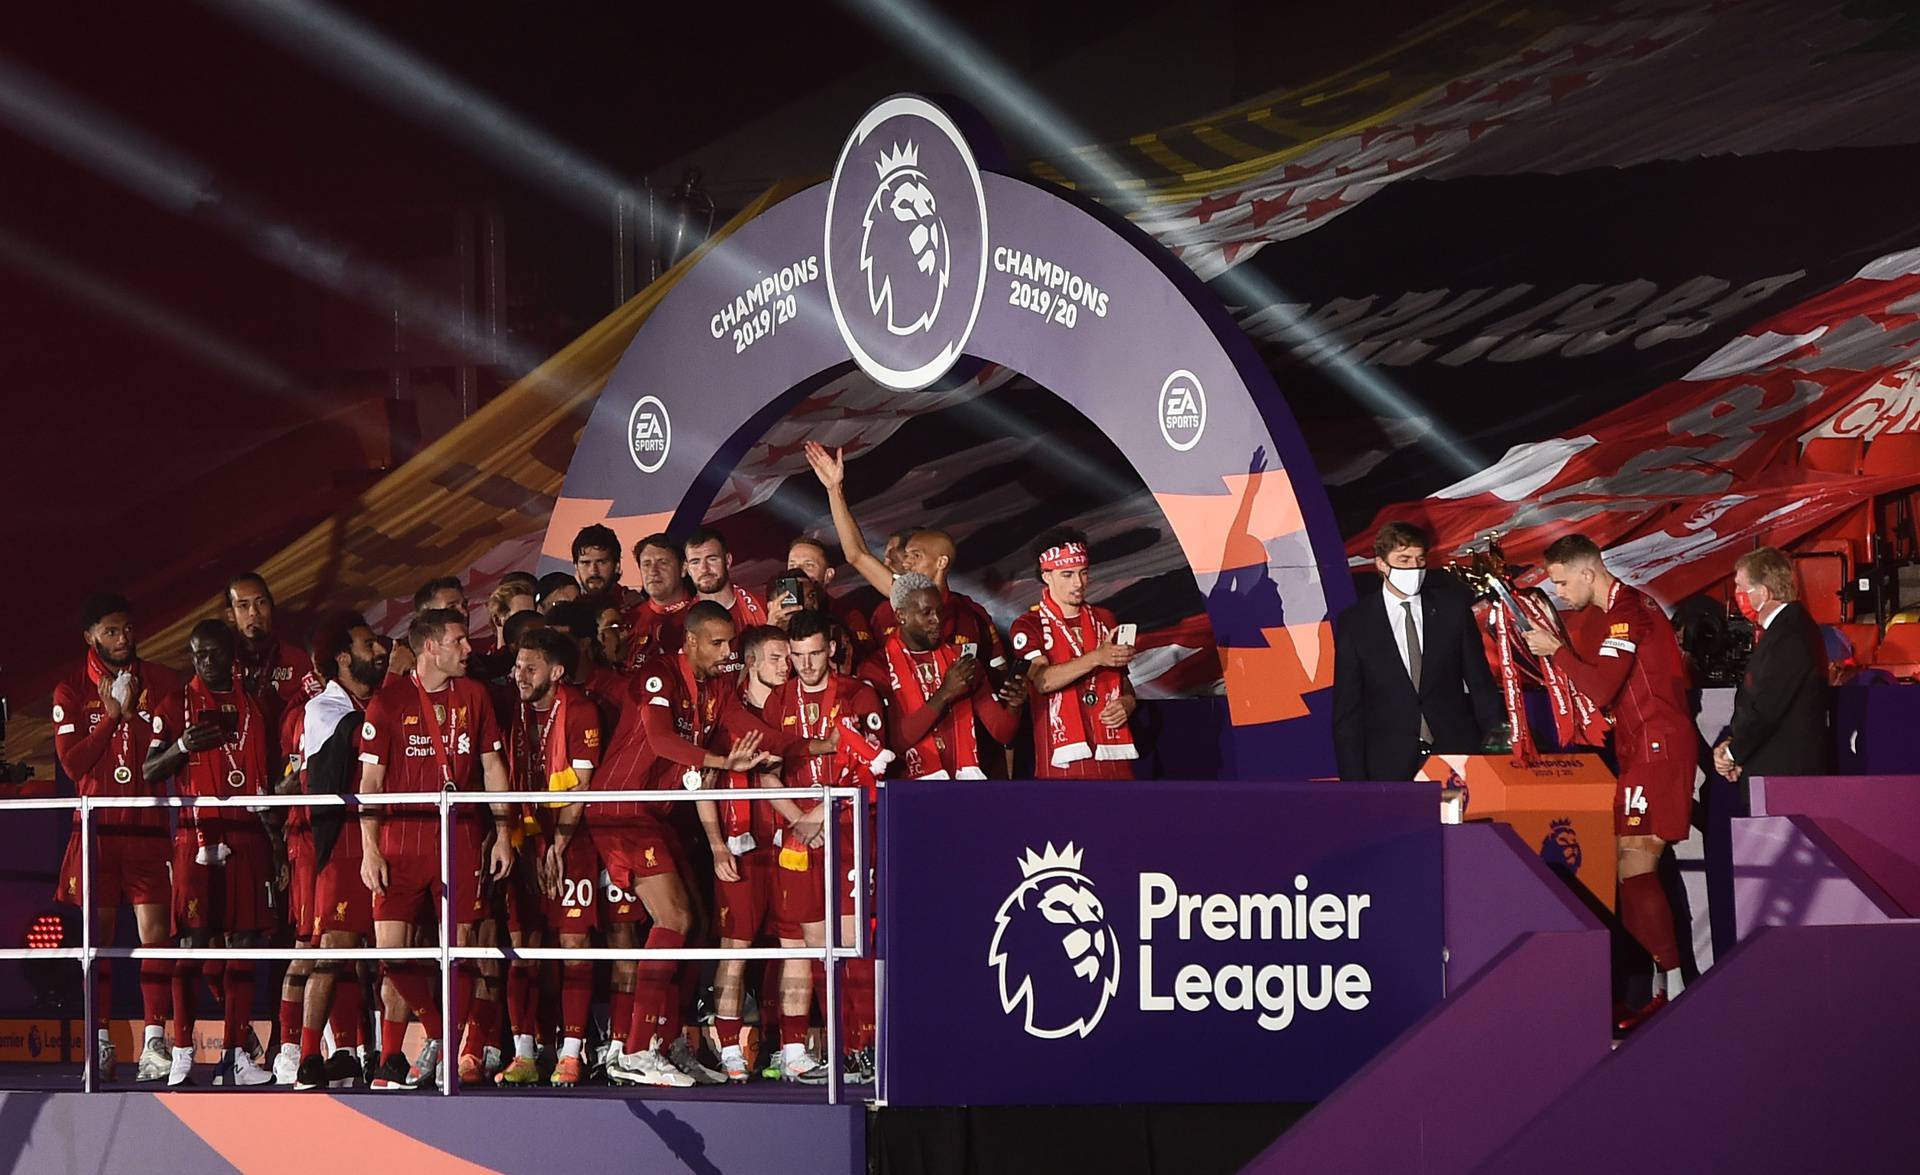 Premier League - Liverpool v Chelsea